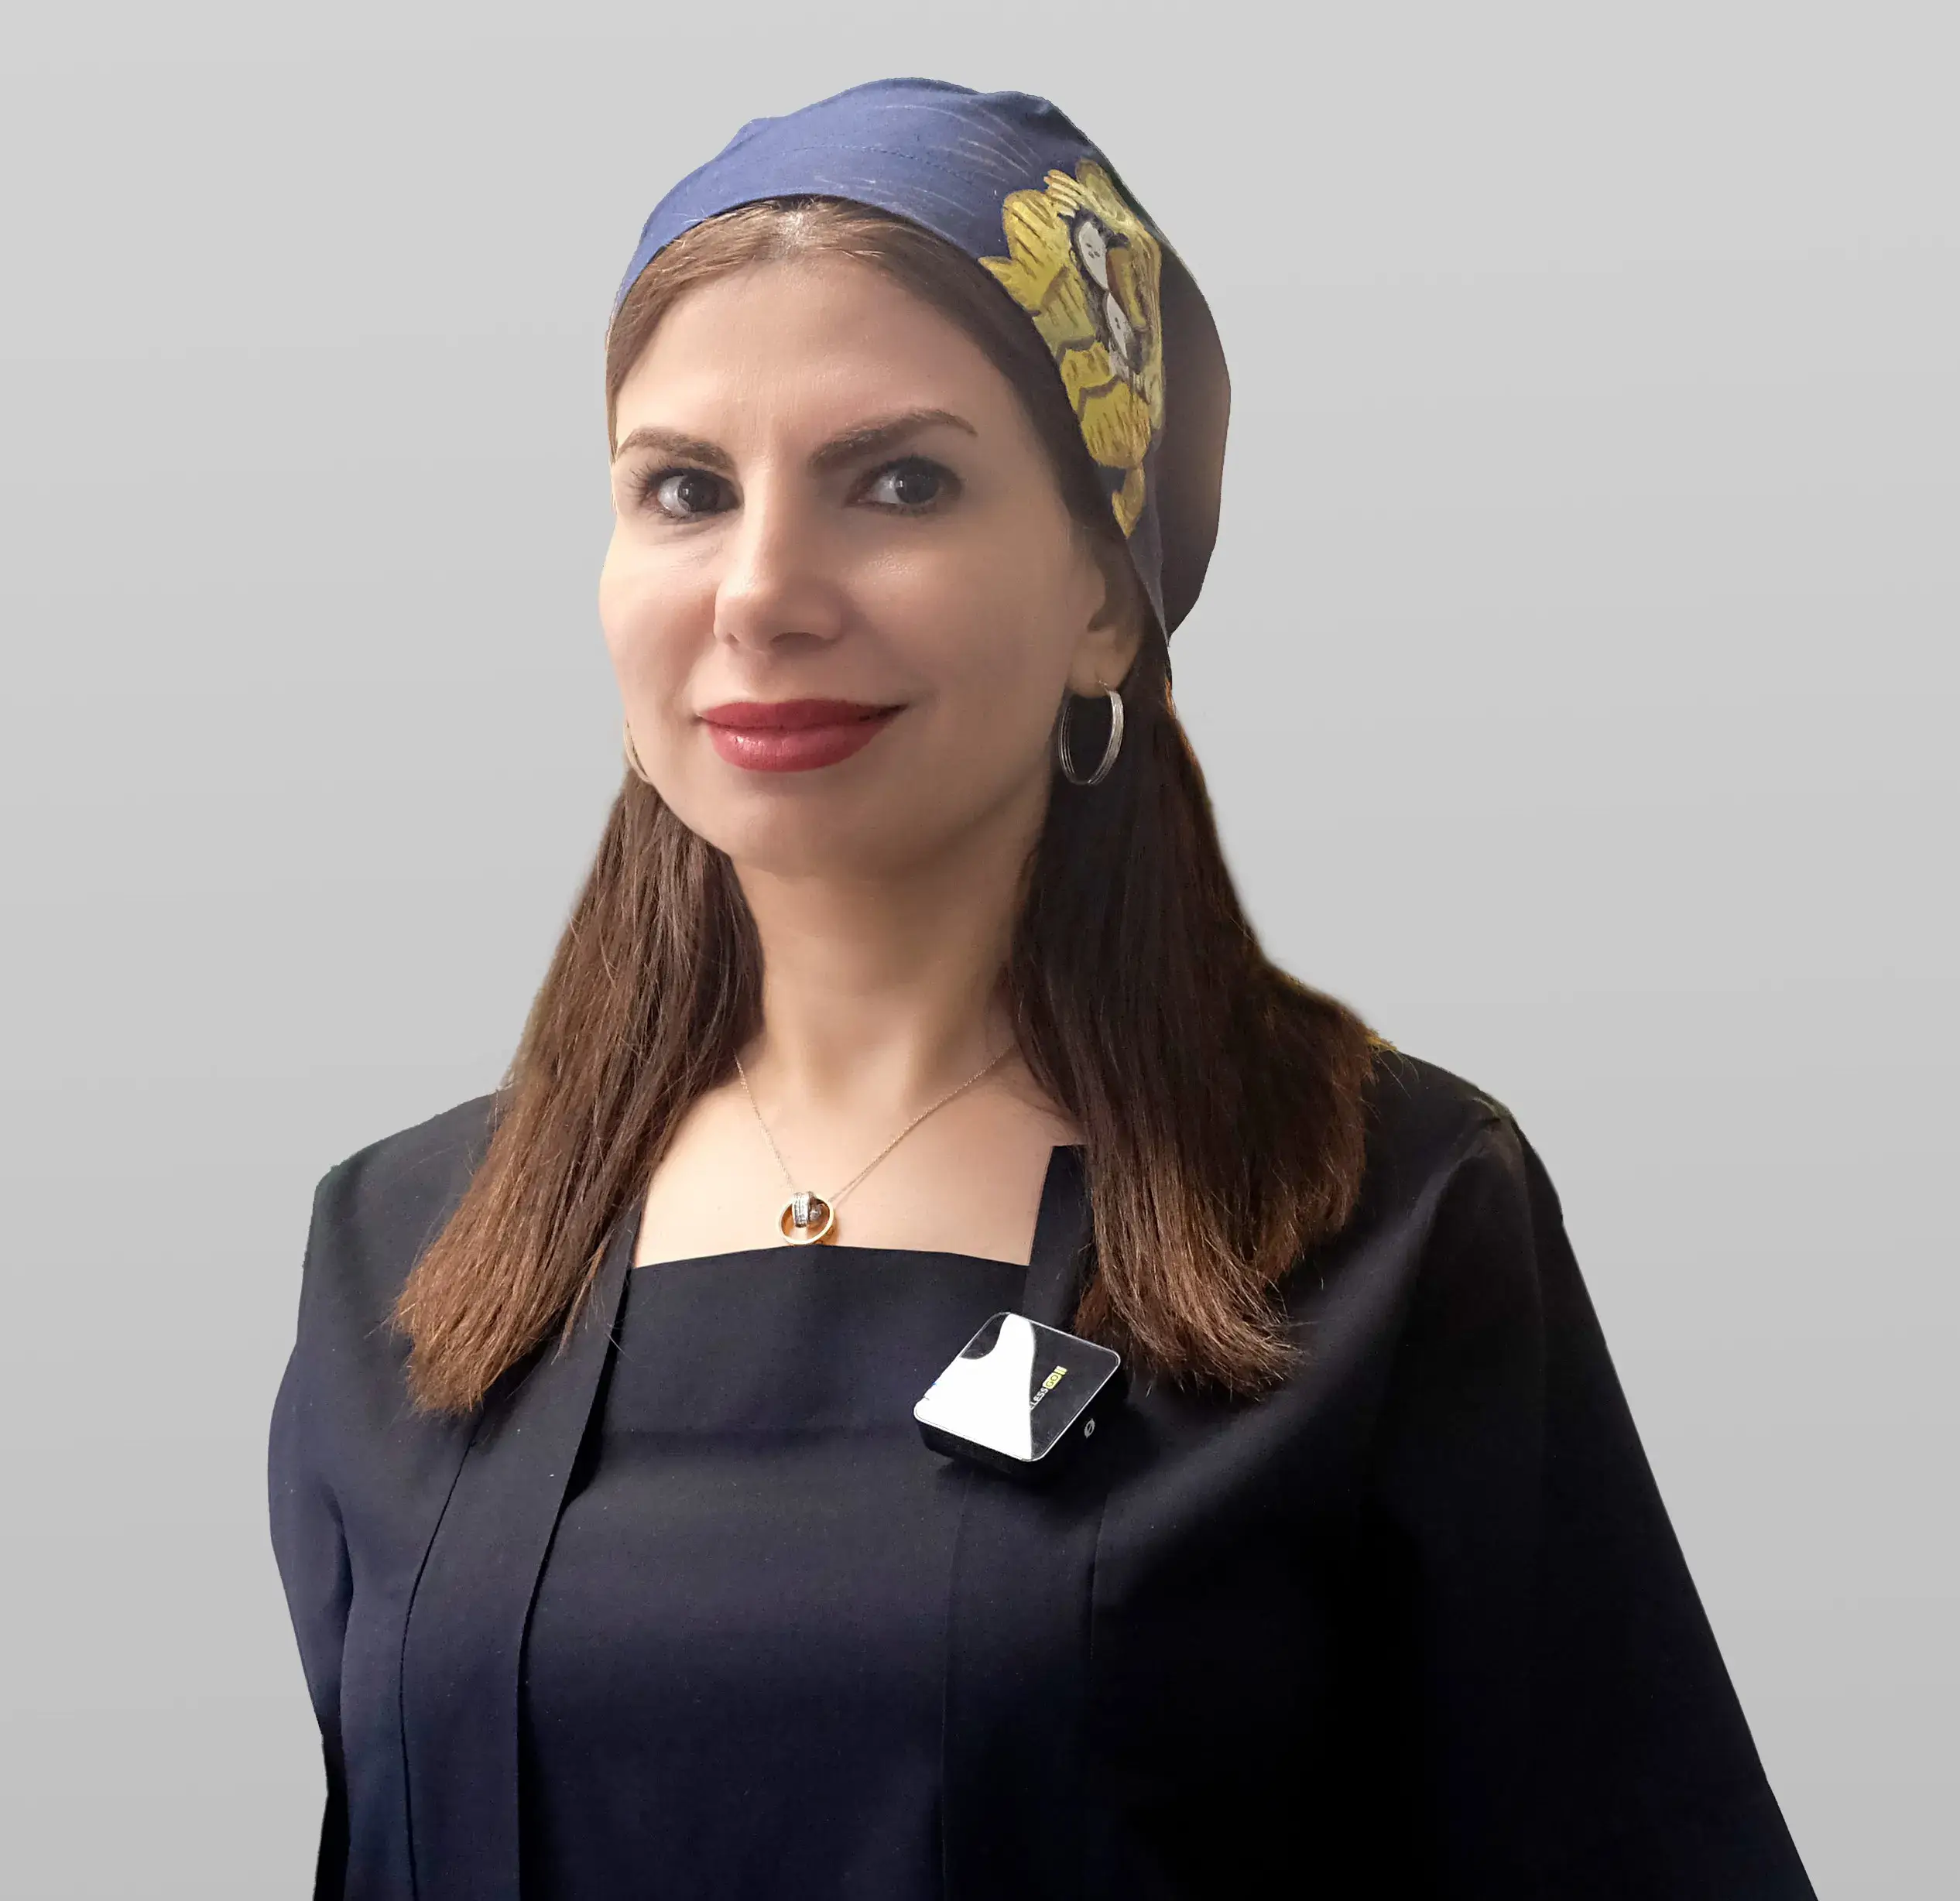 Dr. Karina Ghadimi